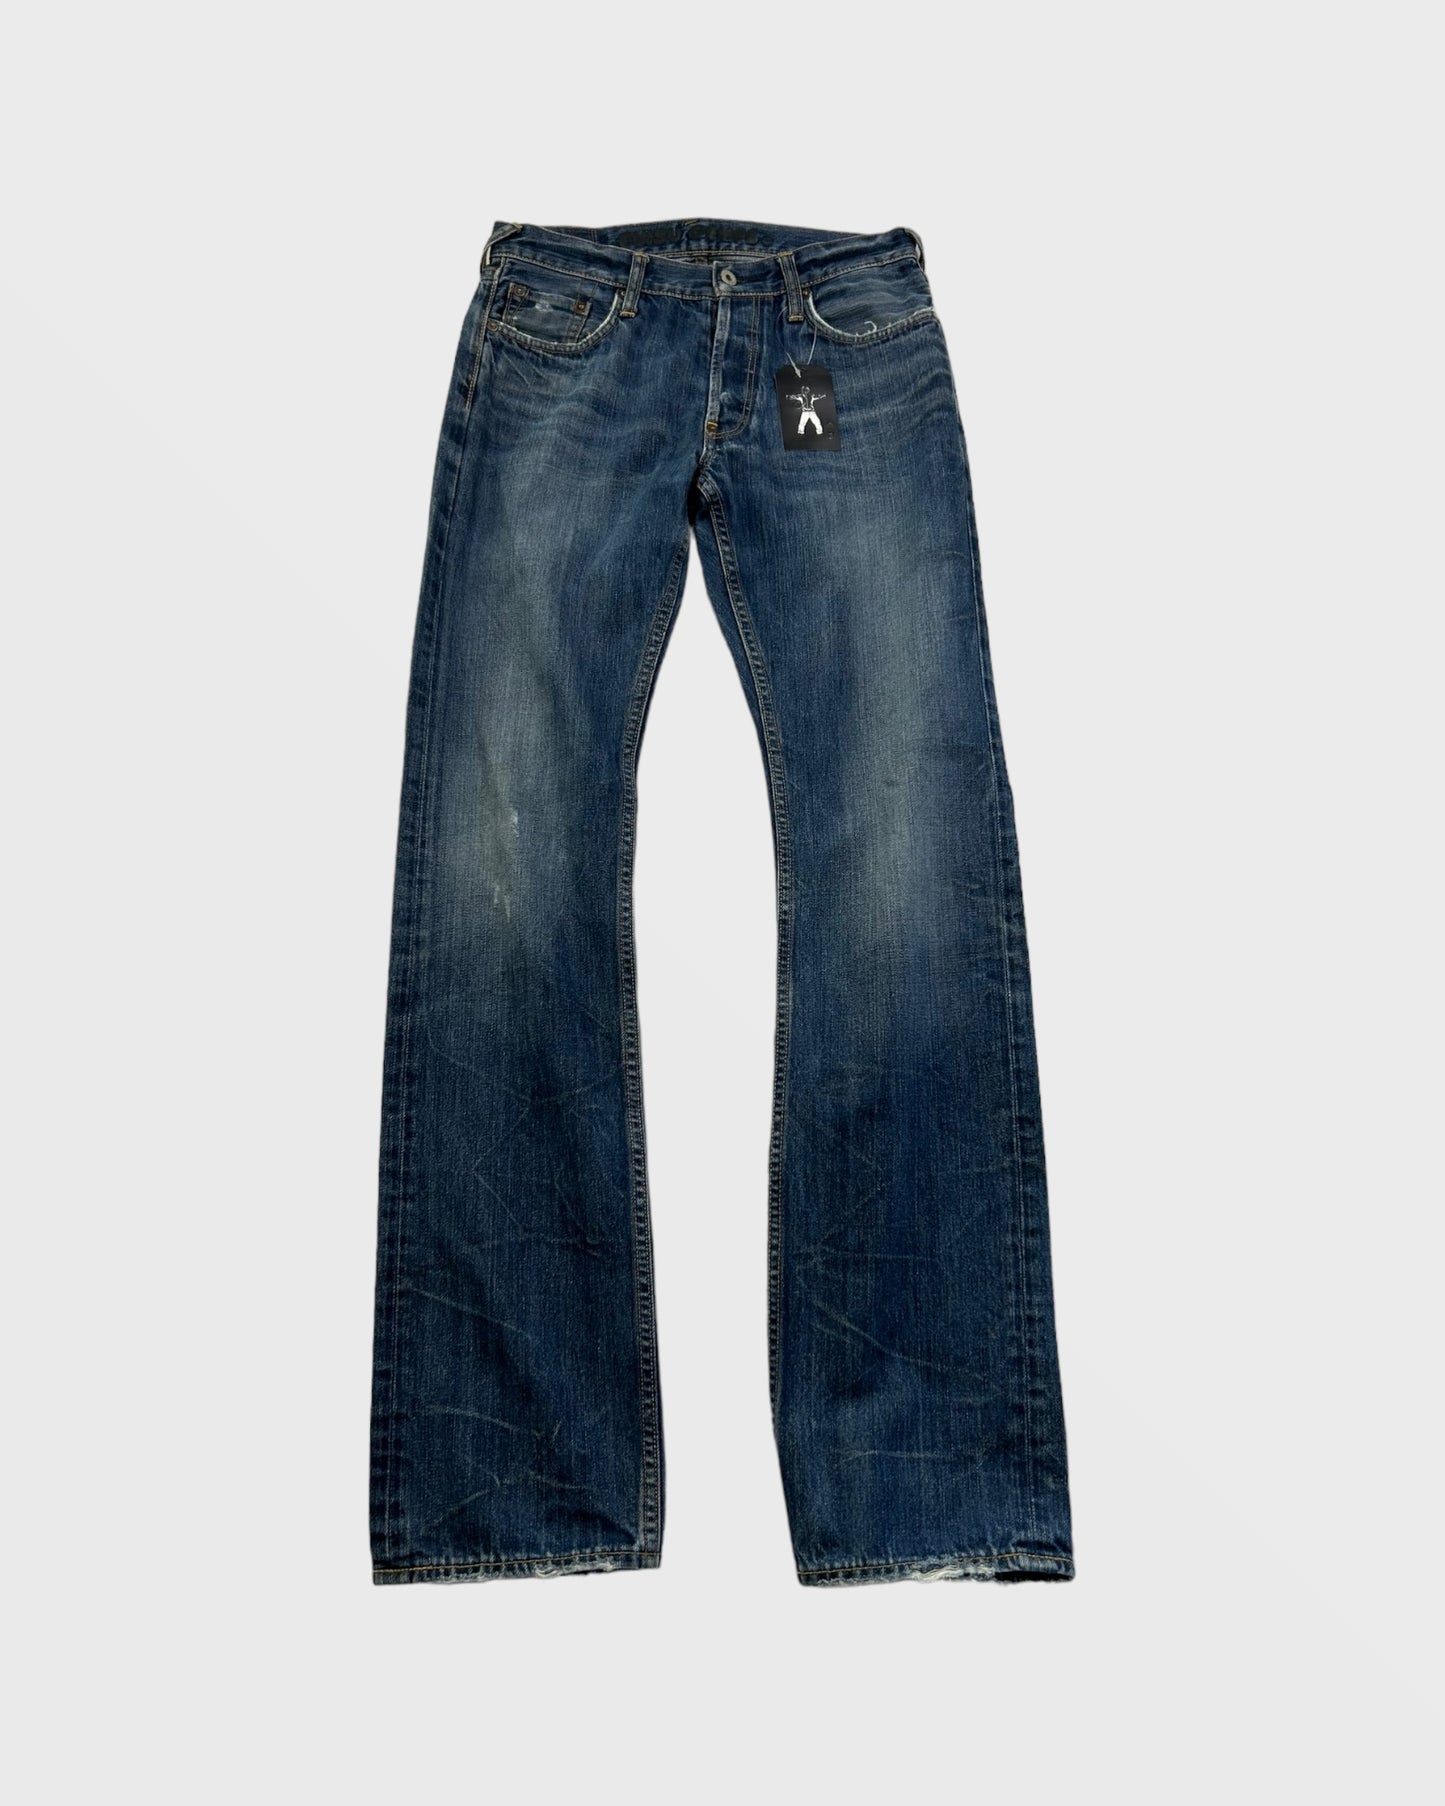 Evisu denim Japanese jeans (L)